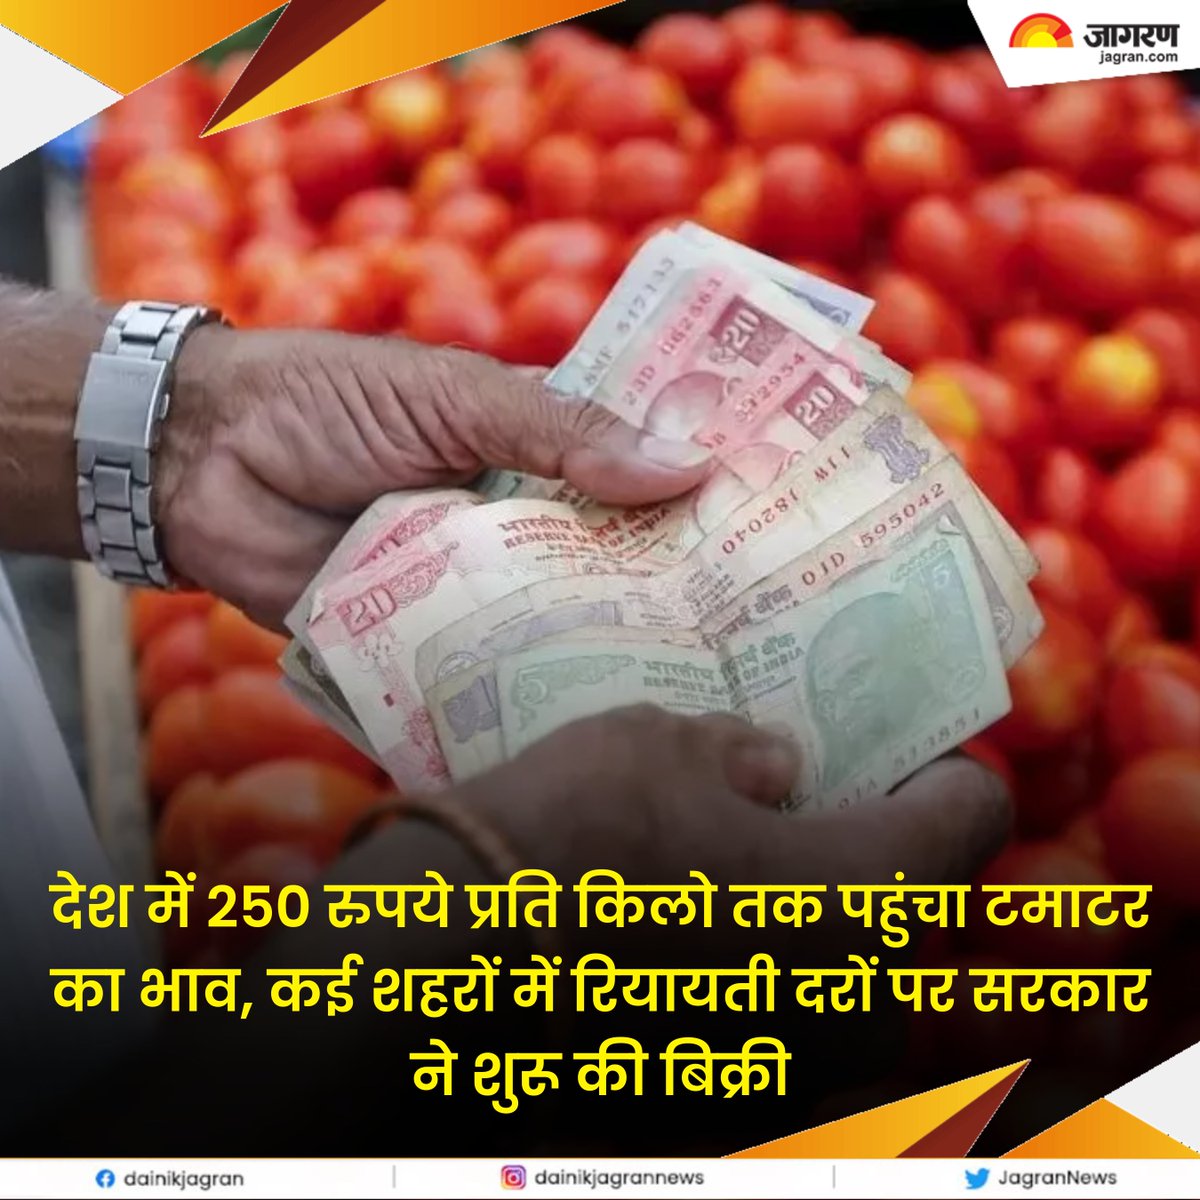 bitly.ws/LupN || देश में 250 रुपये प्रति किलो तक पहुंचा टमाटर का भाव, कई शहरों में रियायती दरों पर सरकार ने शुरू की बिक्री

#TomatoPrices #VegetablePrices #PriceHike #GovernmentInitiative